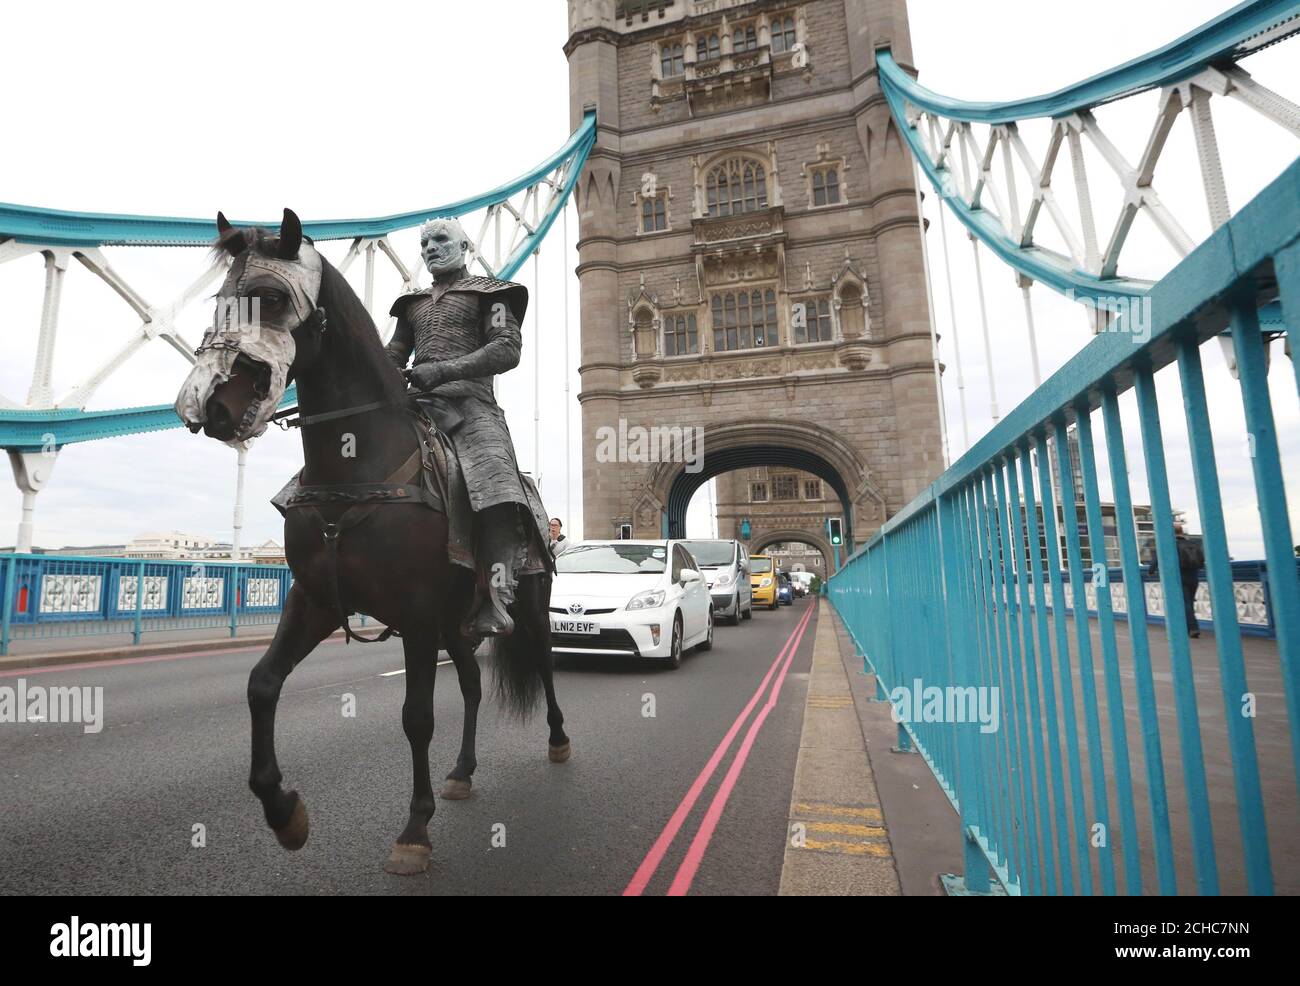 Un modello a cavallo vestito come il Re Notturno dei 'White Walkers' da Game of Thrones, attraversa Tower Bridge a Londra per celebrare l'imminente inizio della stagione 7 del programma televisivo, che si apre alle 21:00 il Lunedi 17 luglio su Sky Atlantic. Foto Stock